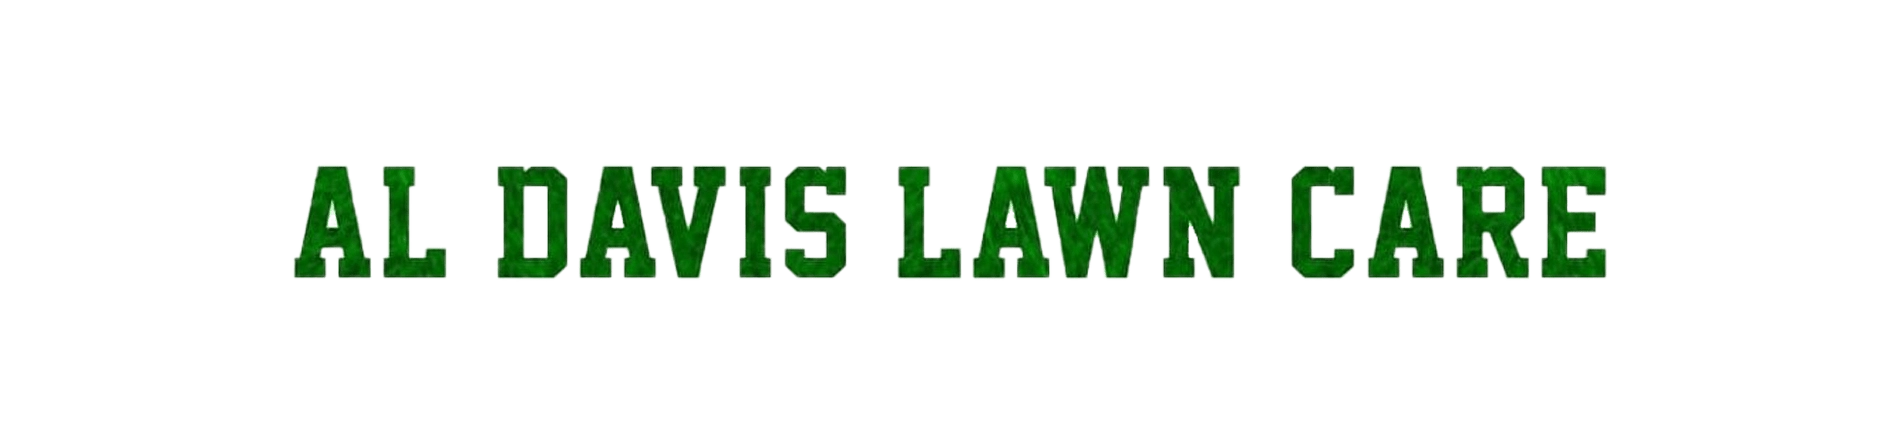 Al Davis Lawn Care Co. Logo